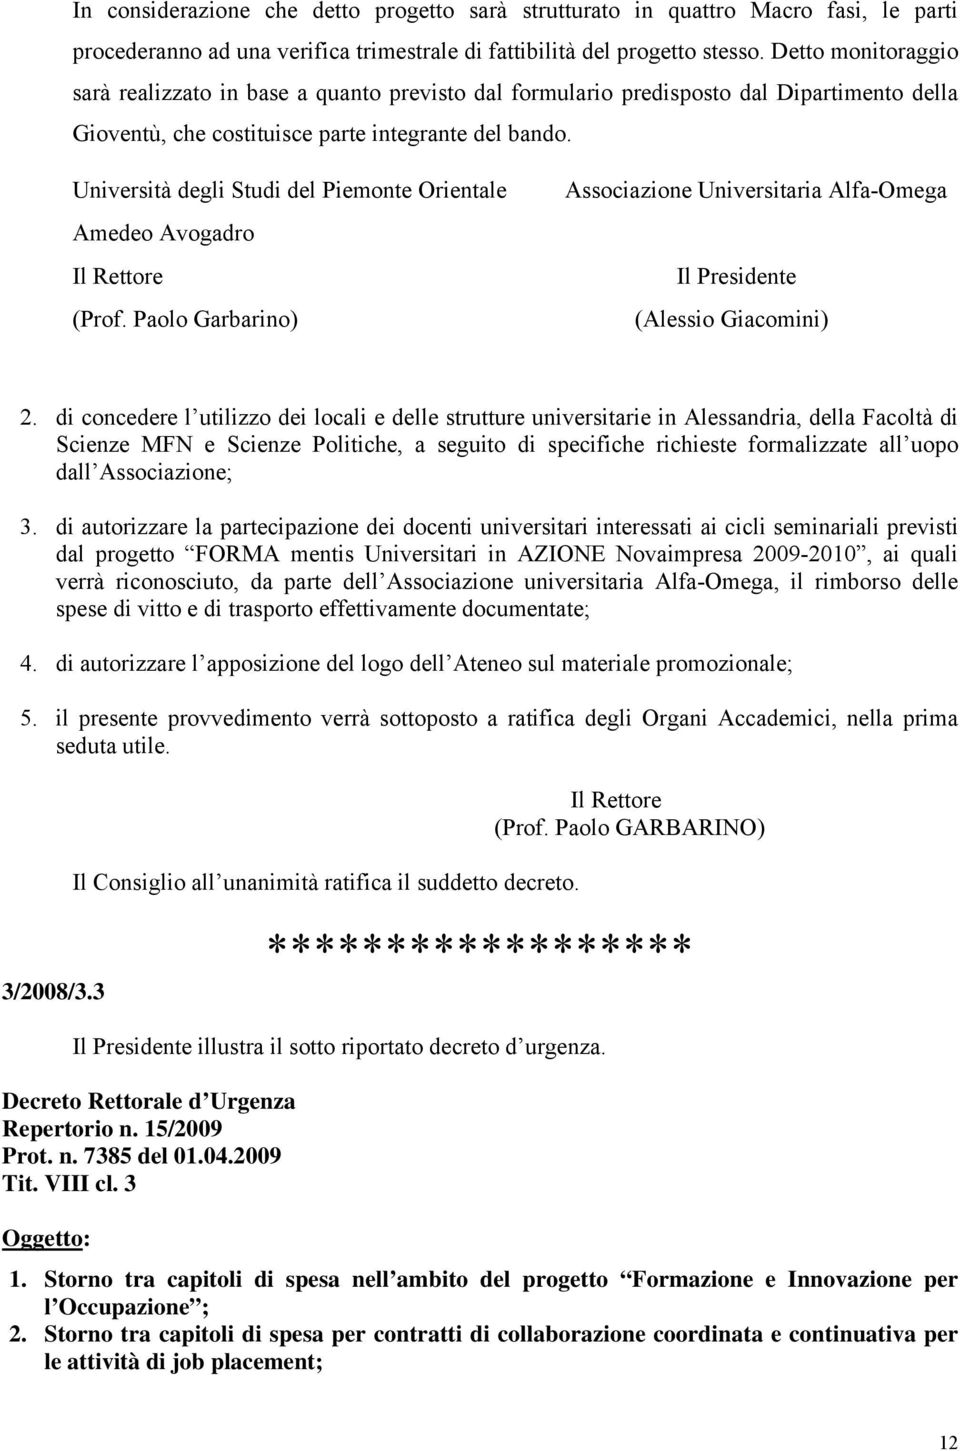 Università degli Studi del Piemonte Orientale Amedeo Avogadro Il Rettore (Prof. Paolo Garbarino) Associazione Universitaria Alfa-Omega Il Presidente (Alessio Giacomini) 2.